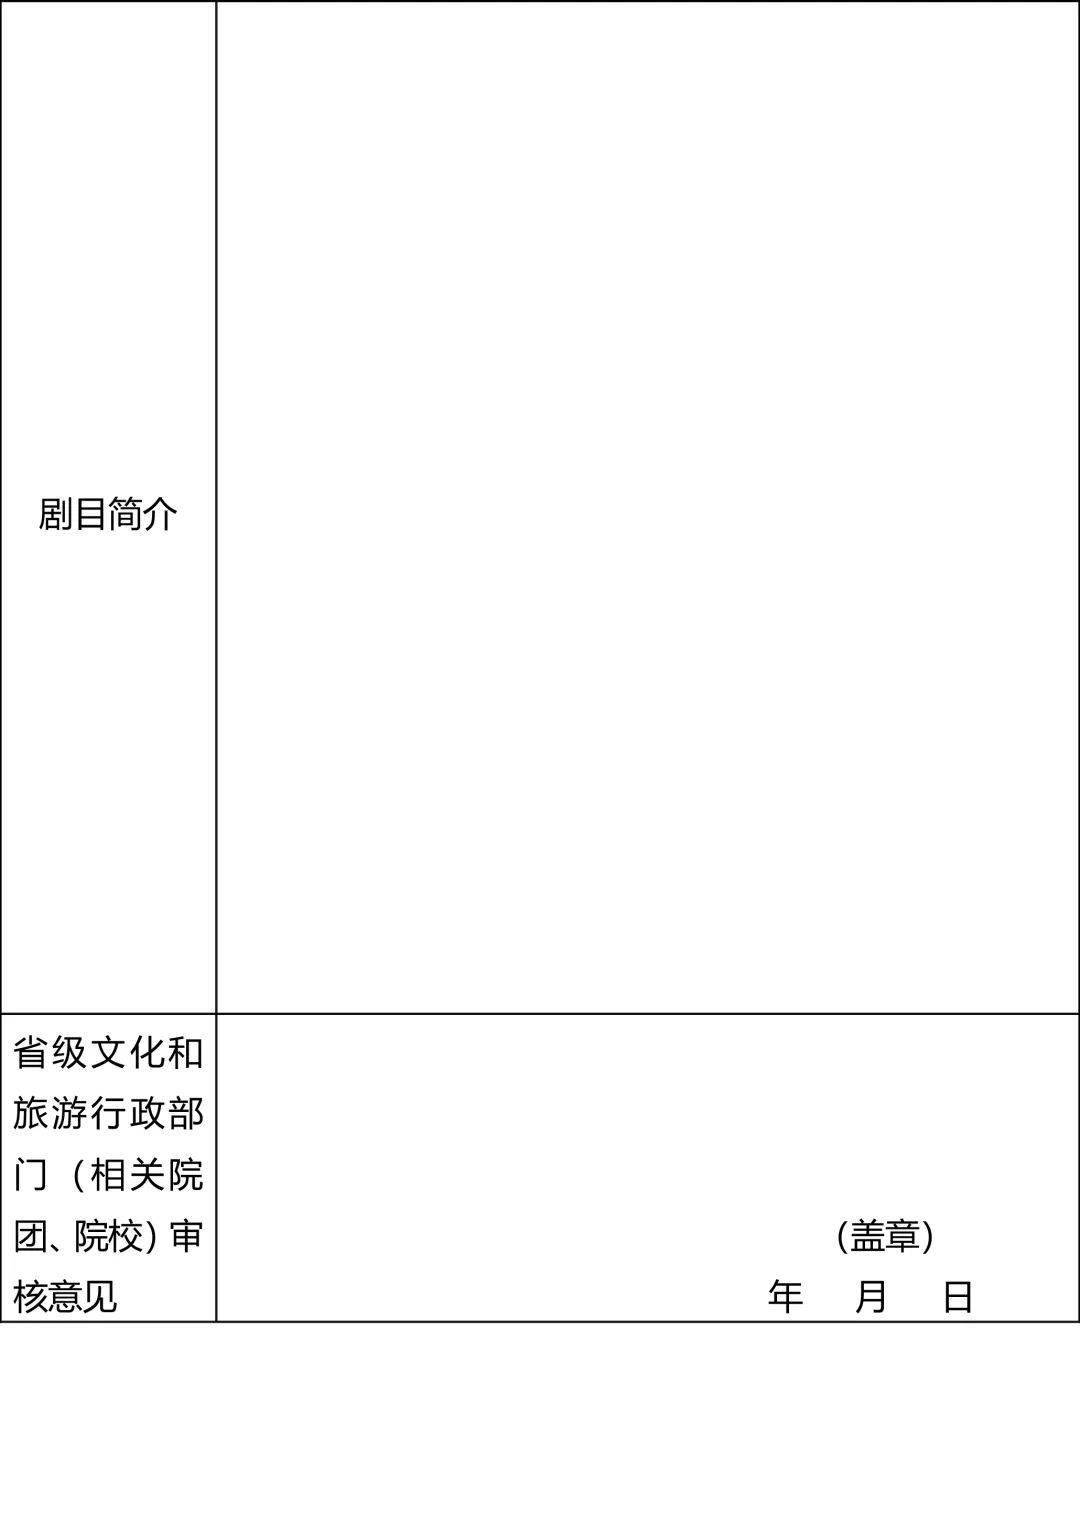 小苹果版中国行政:头条 | 文化和旅游部办公厅关于举办第五届中国歌剧节的通知-第2张图片-太平洋在线企业邮局